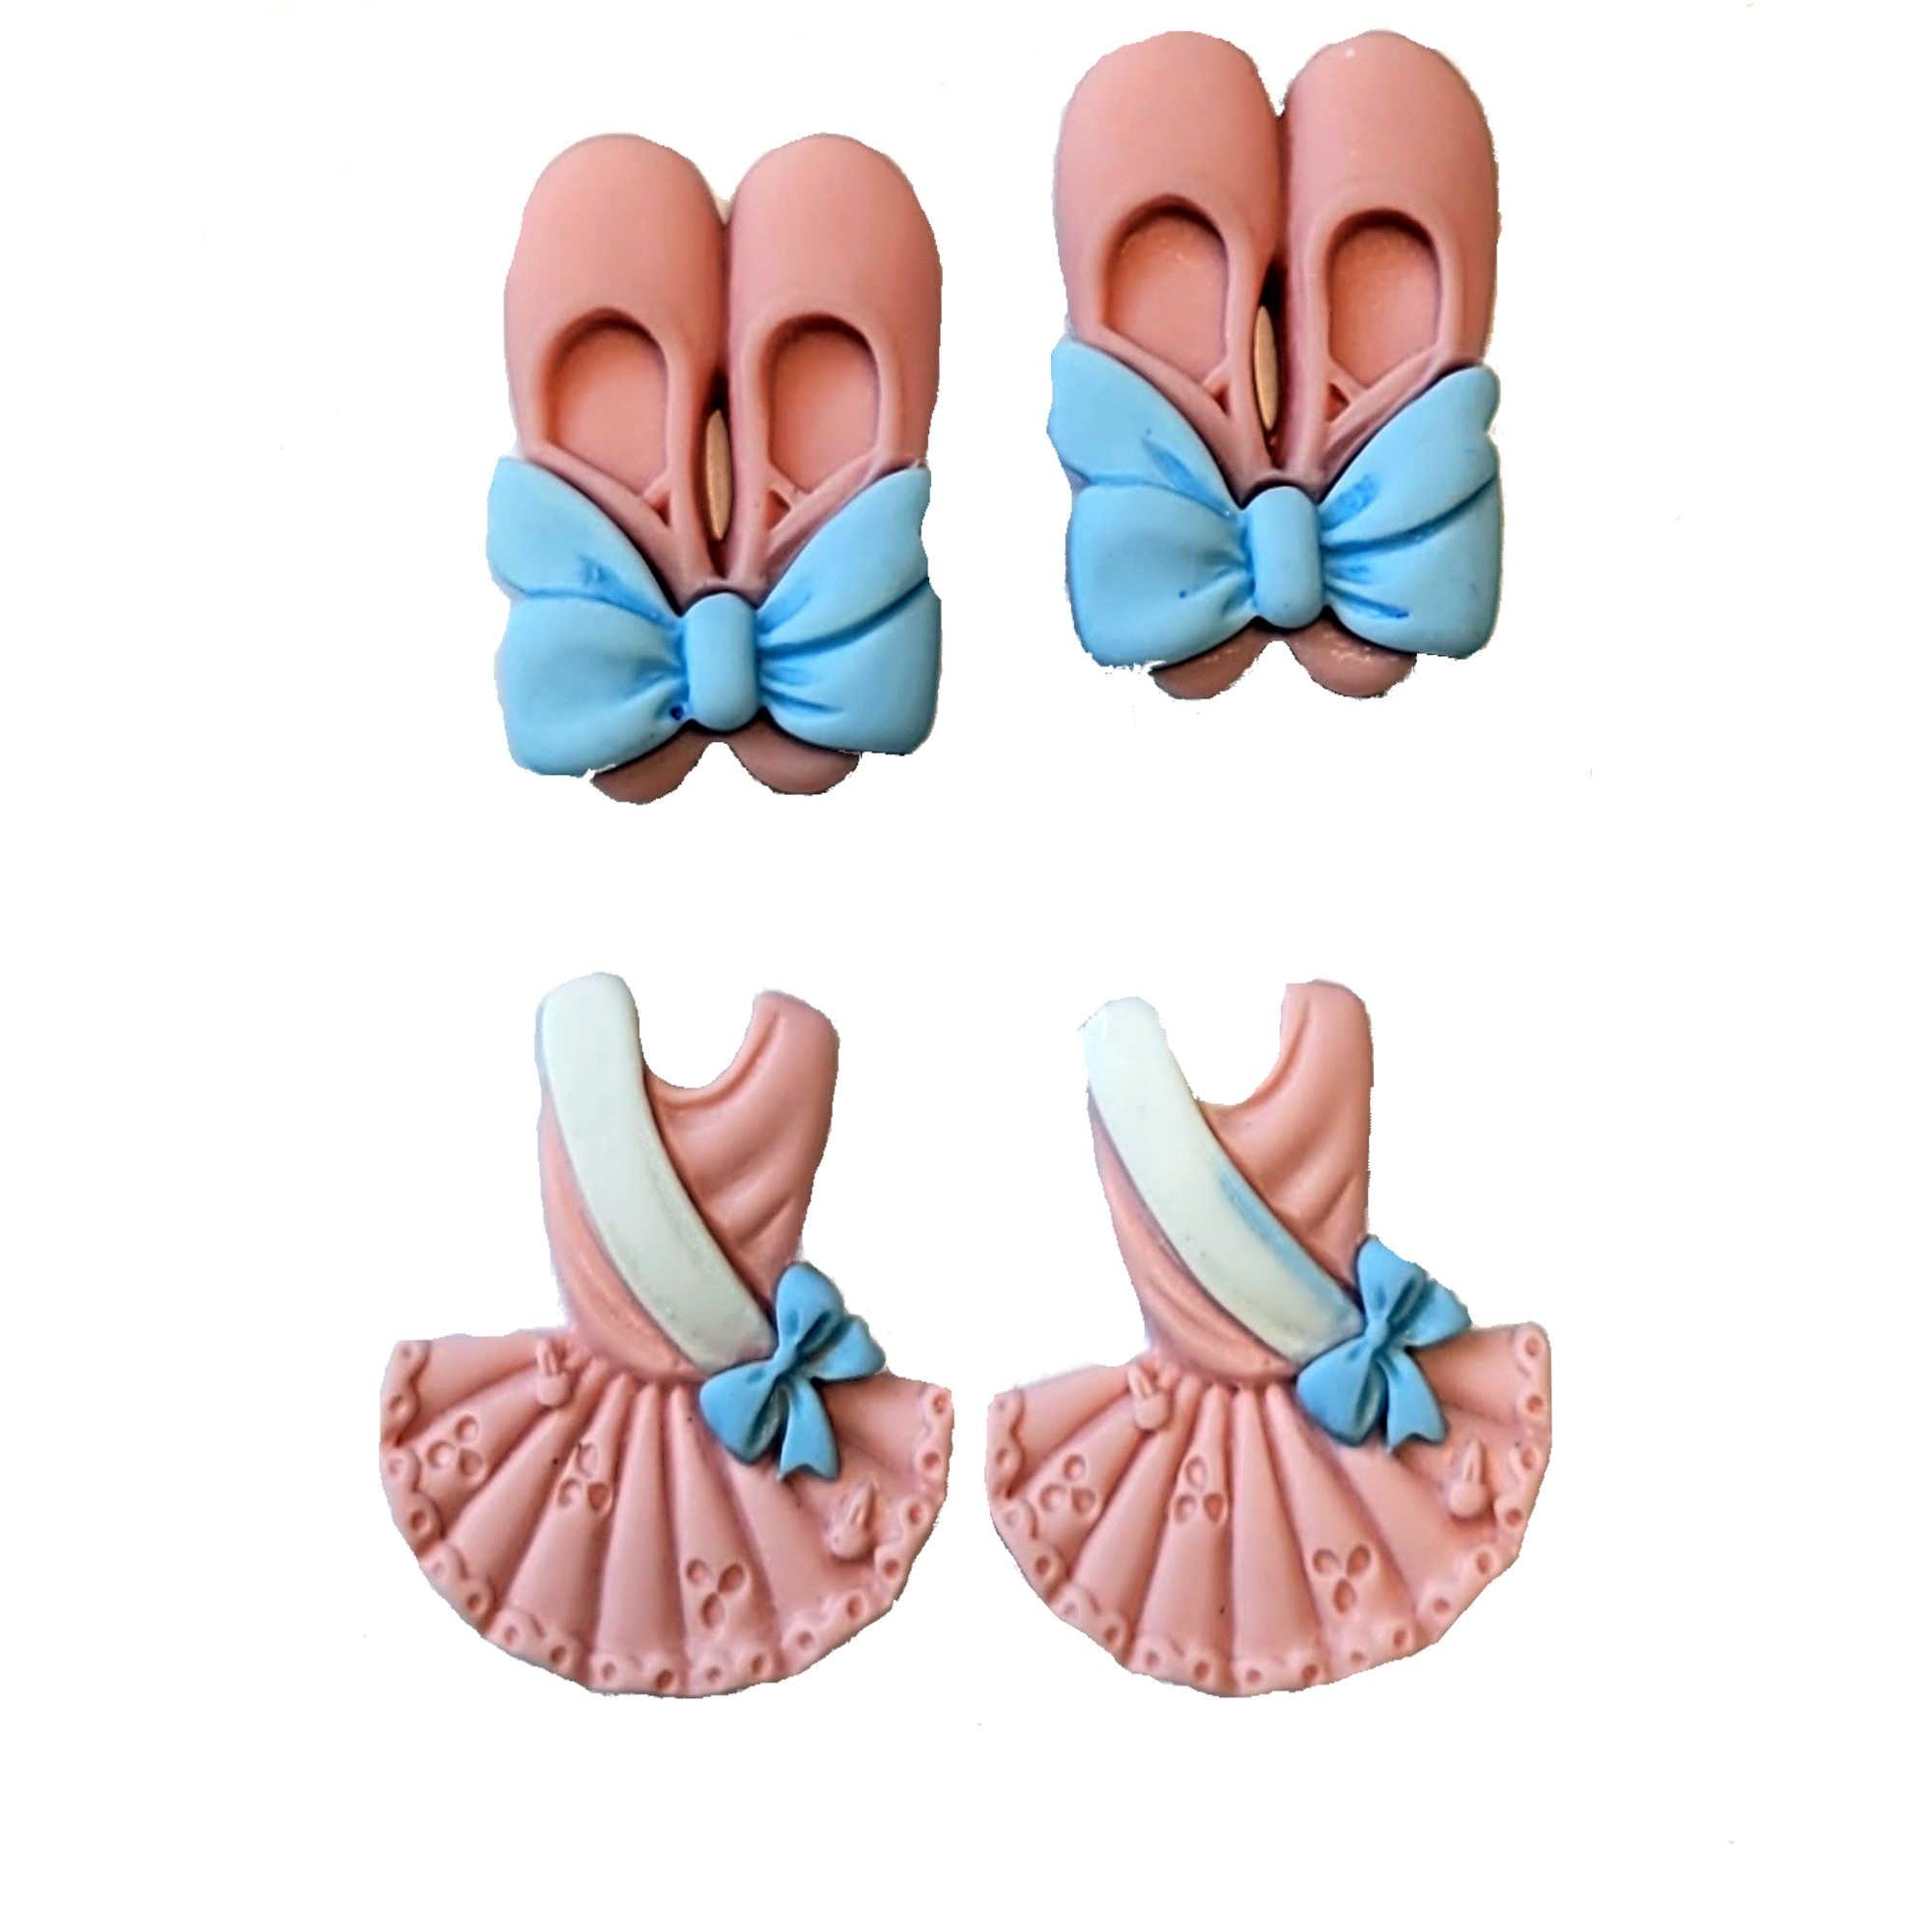 Ballerina Collection Pink Ballerina Dress & Ballet Shoes Flatback Buttons by SSC Designs - Pkg. of 4 - Scrapbook Supply Companies